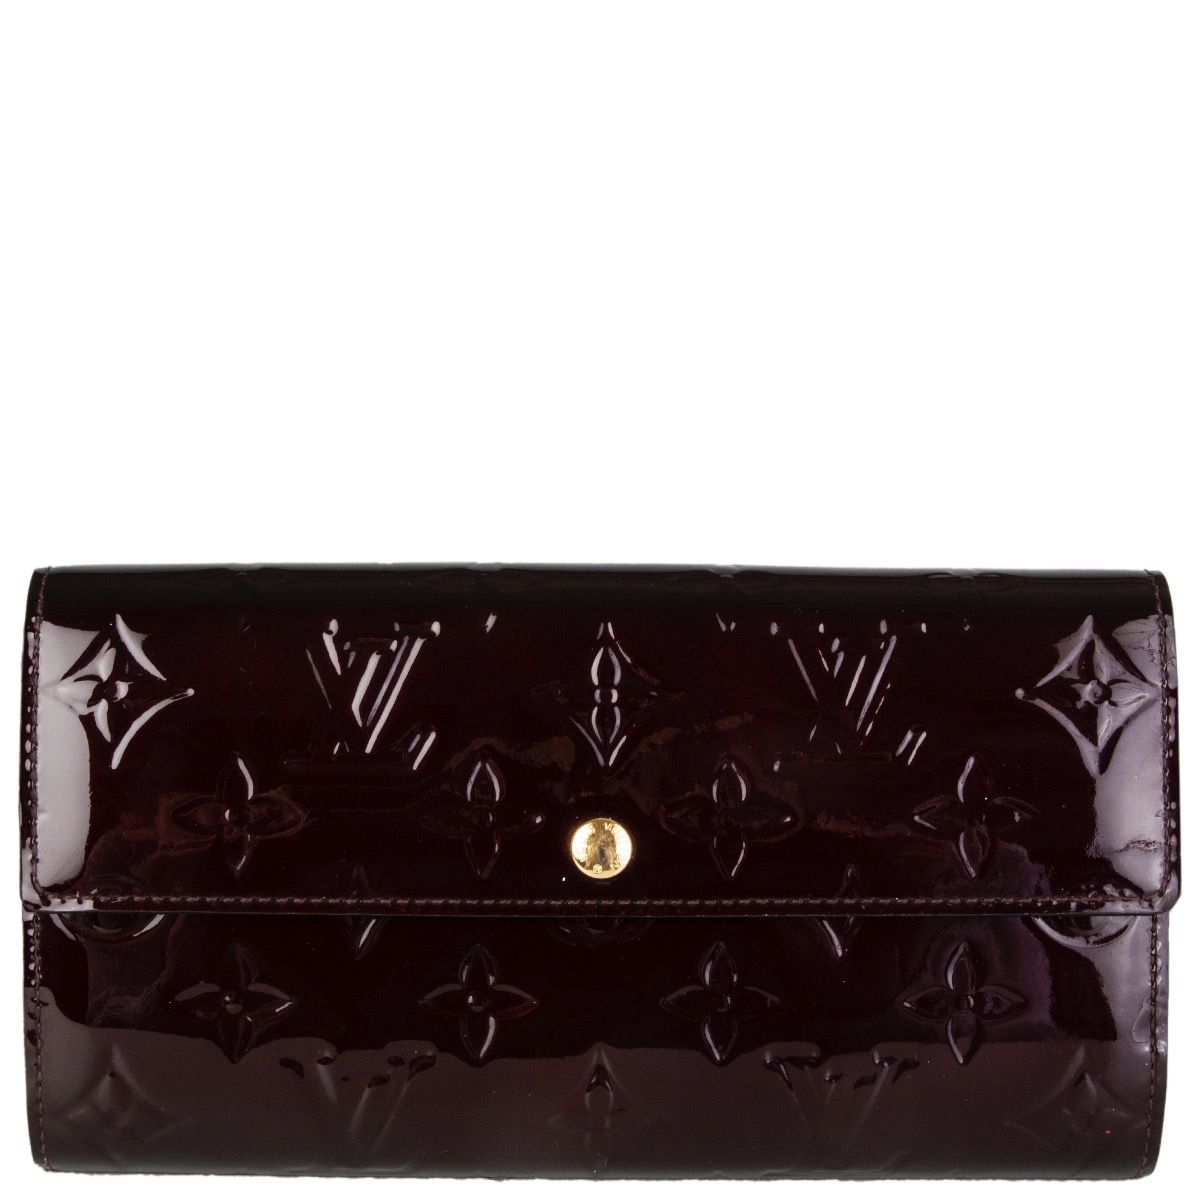 Shop Louis Vuitton PORTEFEUILLE SARAH Sarah wallet (M62236, M60531, M62235,  M62234) by Sincerity_m639